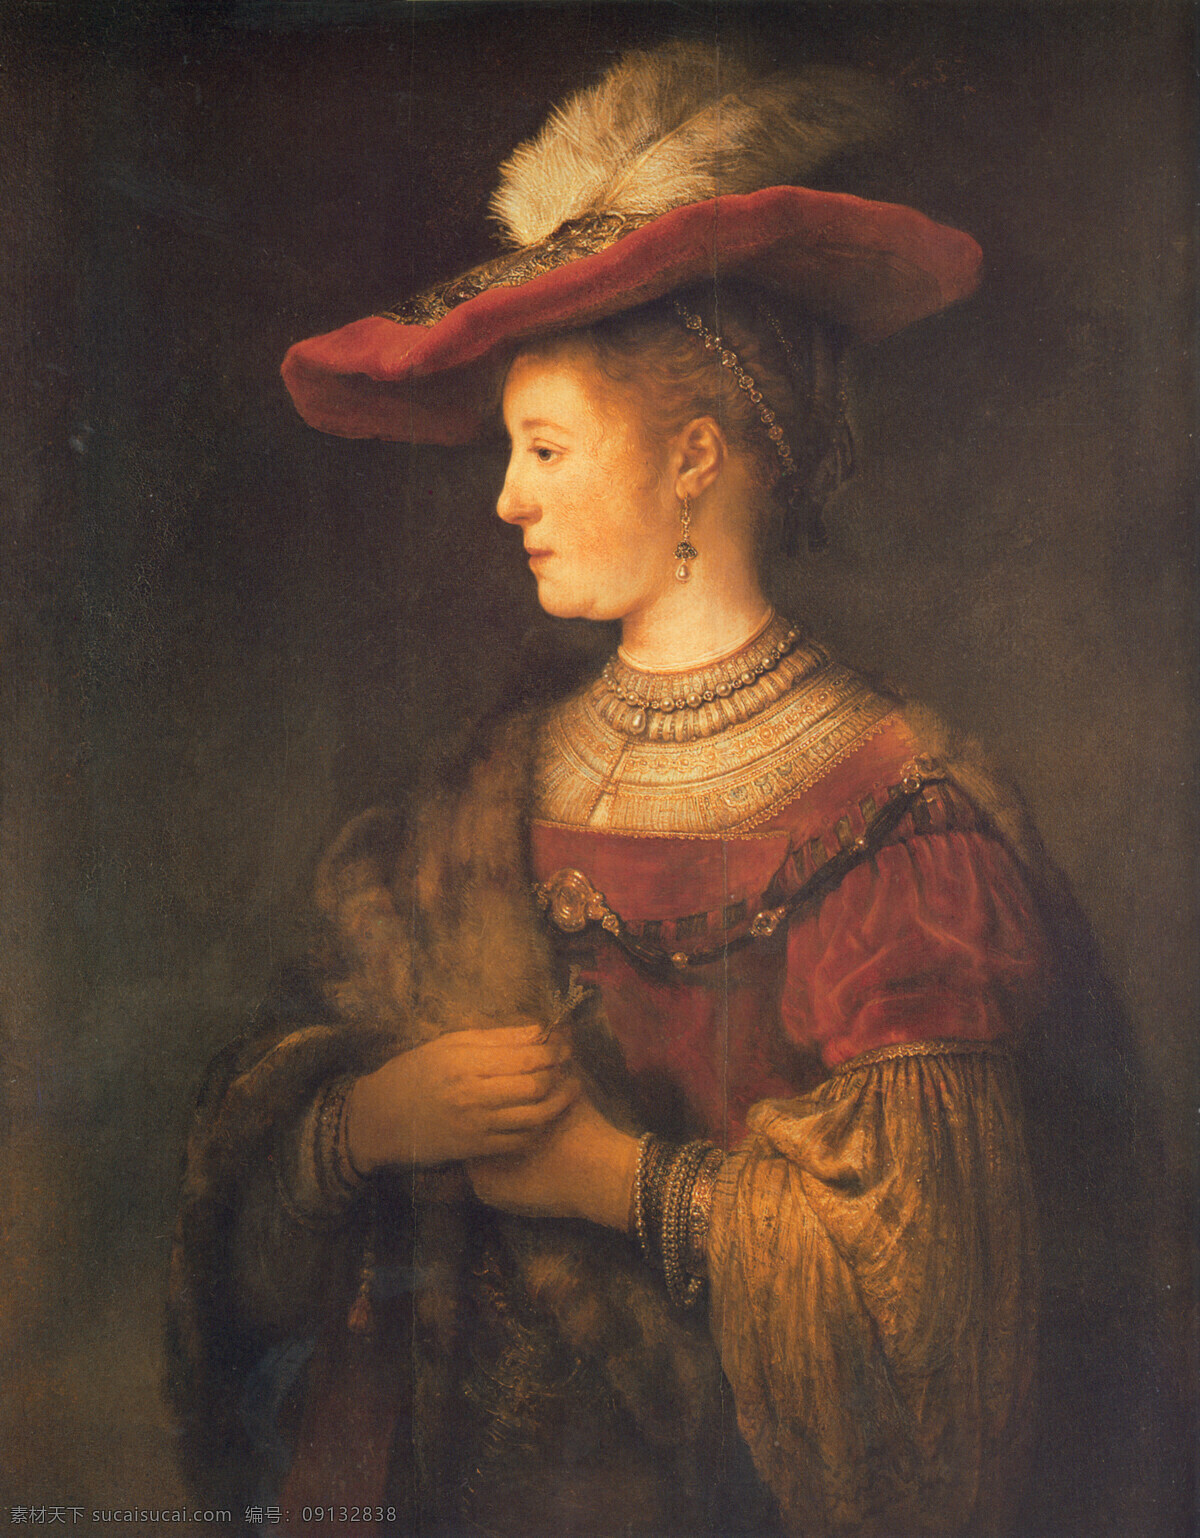 古典 绘画书法 欧洲油画 设计图库 外国油画 文化艺术 西方油画 写实油画 伦布朗 伦布朗油画 女子肖像 戴帽女子 红帽子 油画人物 装饰素材